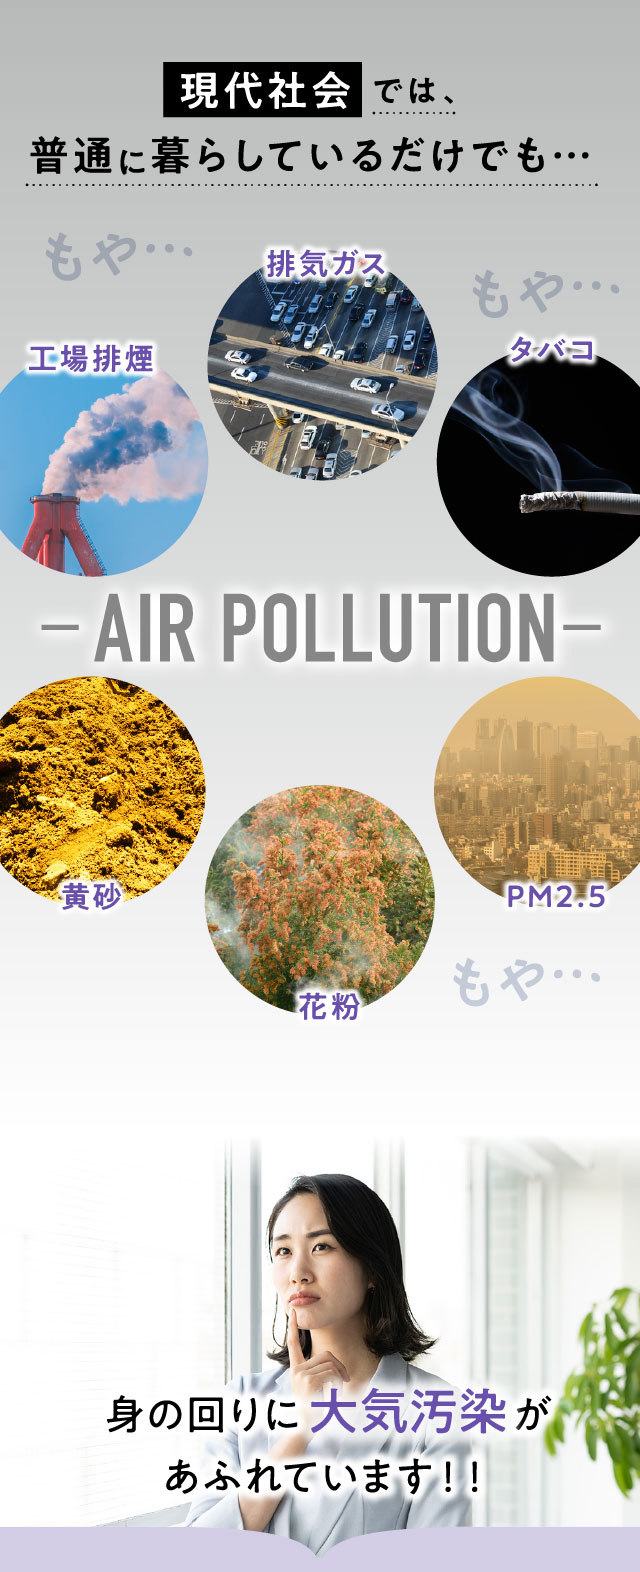 現代社会 では、普通に暮らしているだけでも身の回りに大気汚染があふれています！！